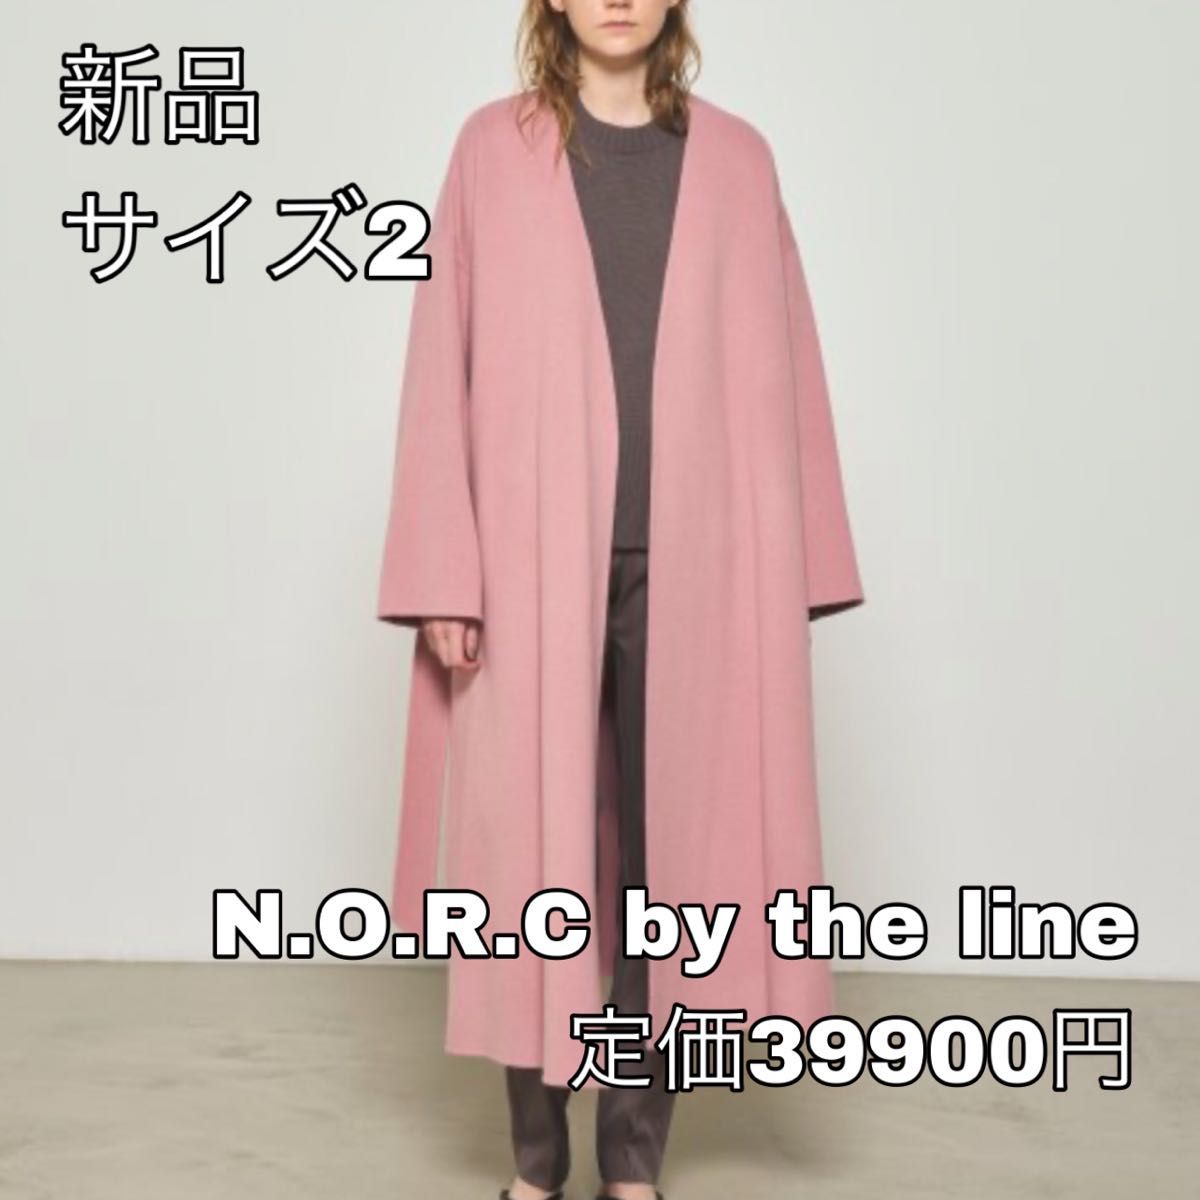 新品値札タグ付き NORC by the line ウールリバーノーカラーコート